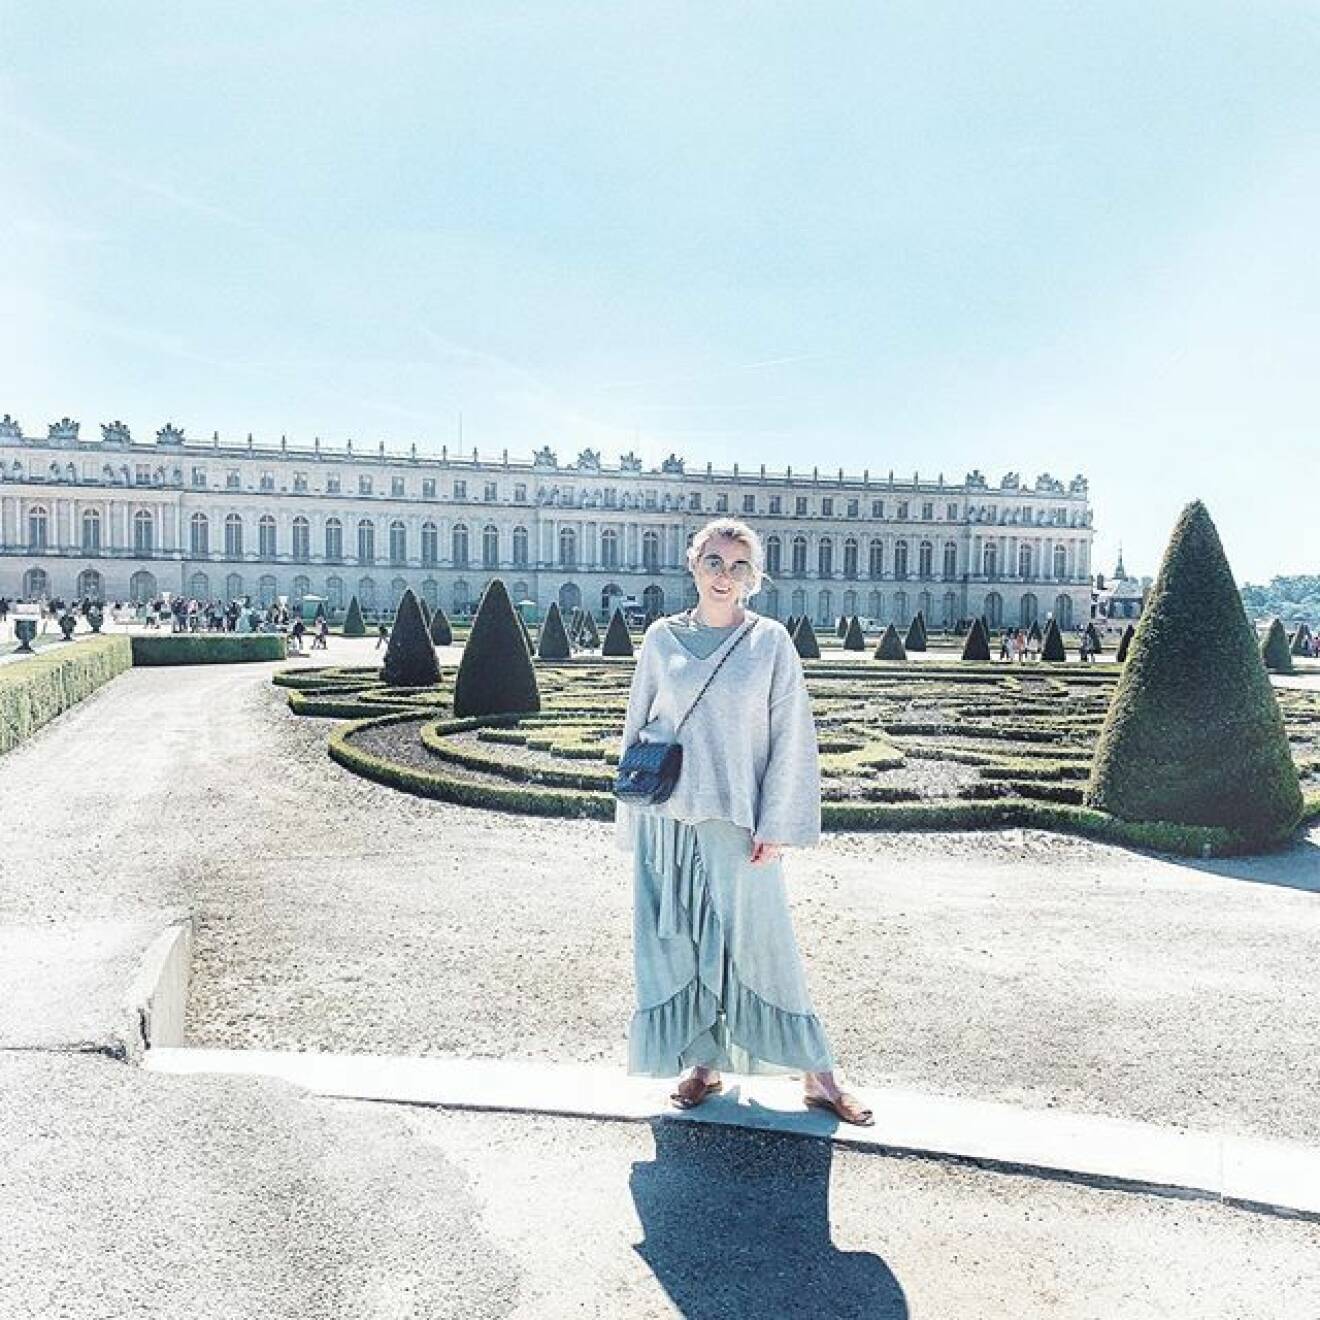 Framme vid slottet i Versailles, där veckans podd spelades in. Foto: @fridafahrman